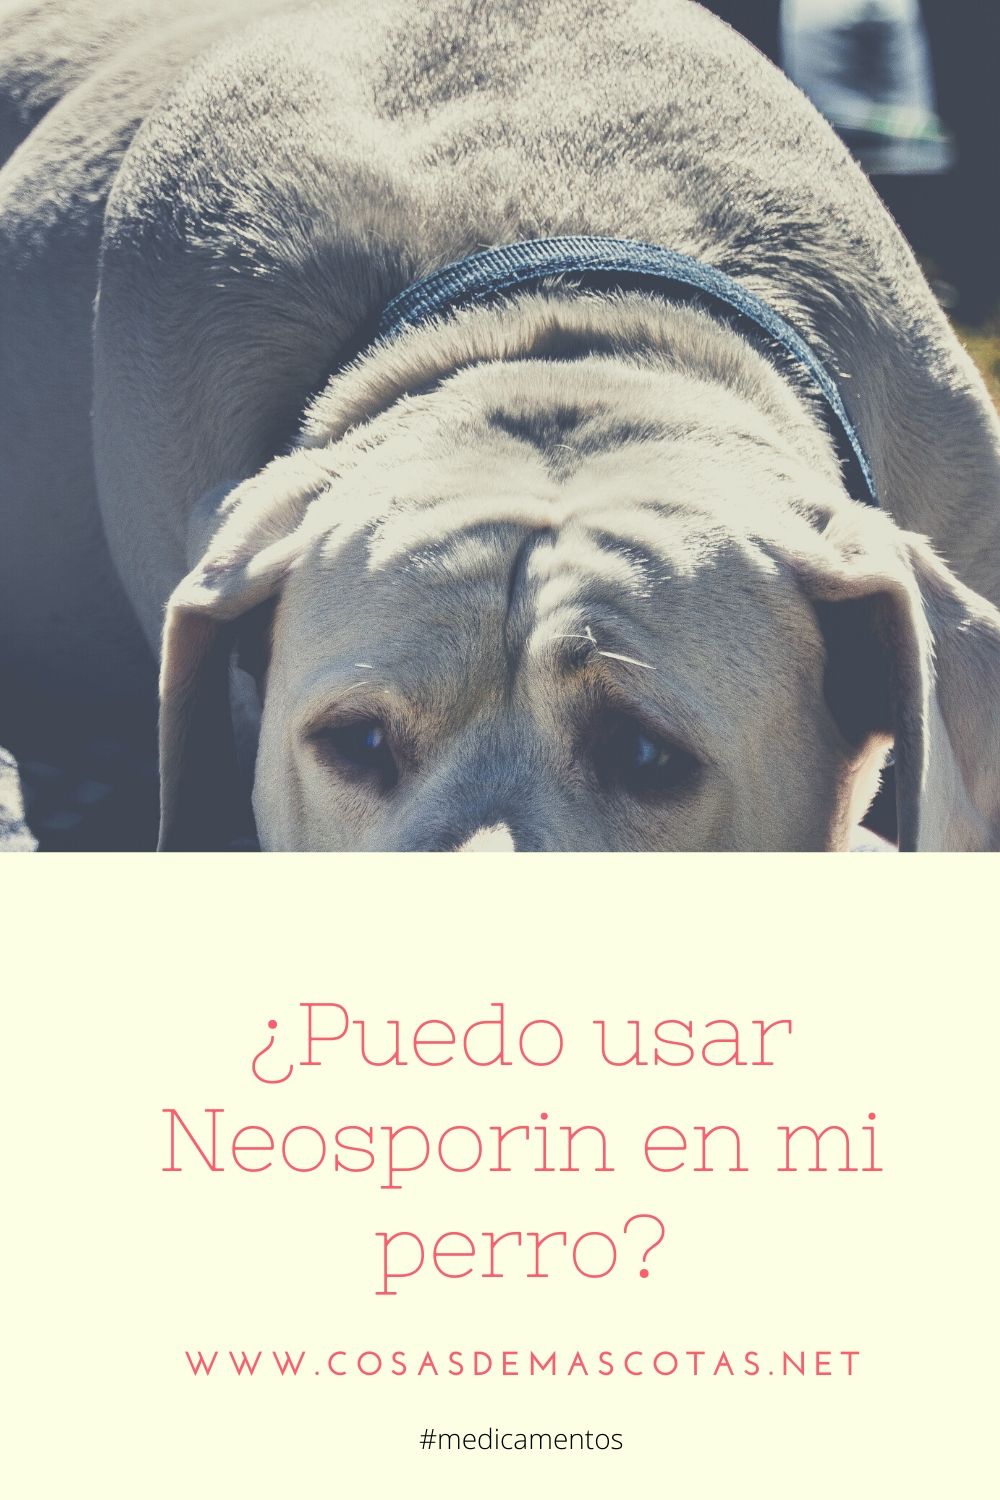 Puedo usar Neosporin en mi perro